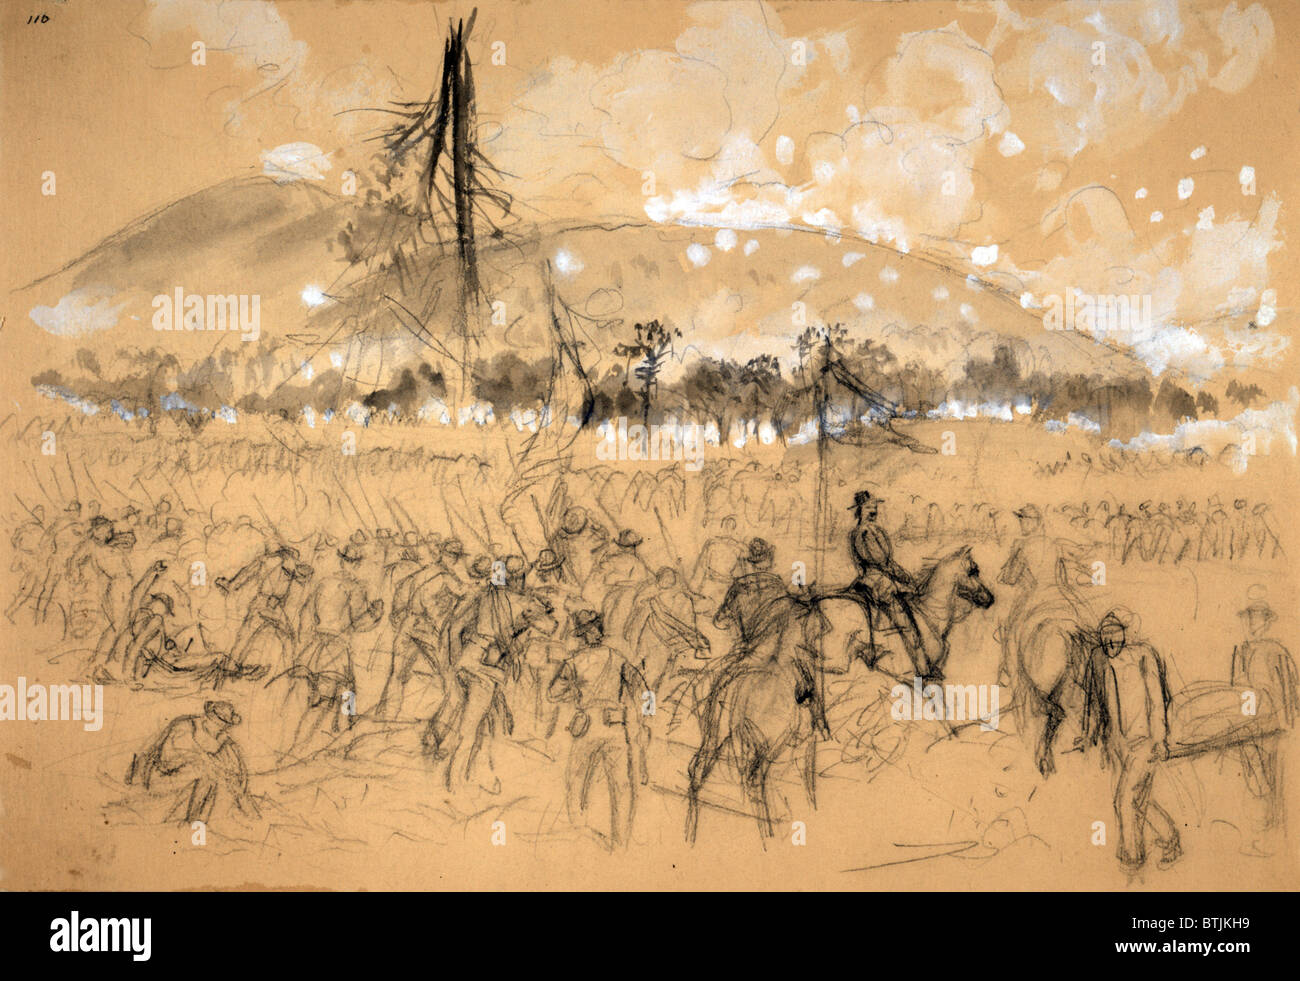 La guerre civile, le général William Tecumseh Sherman, à la Bataille de Kennesaw Mountain, Géorgie. Croquis de l'Union européenne charge troupes vers Kennesaw, dessin sur papier jaune, par Alfred Waud R., le 27 juin 1864. Banque D'Images